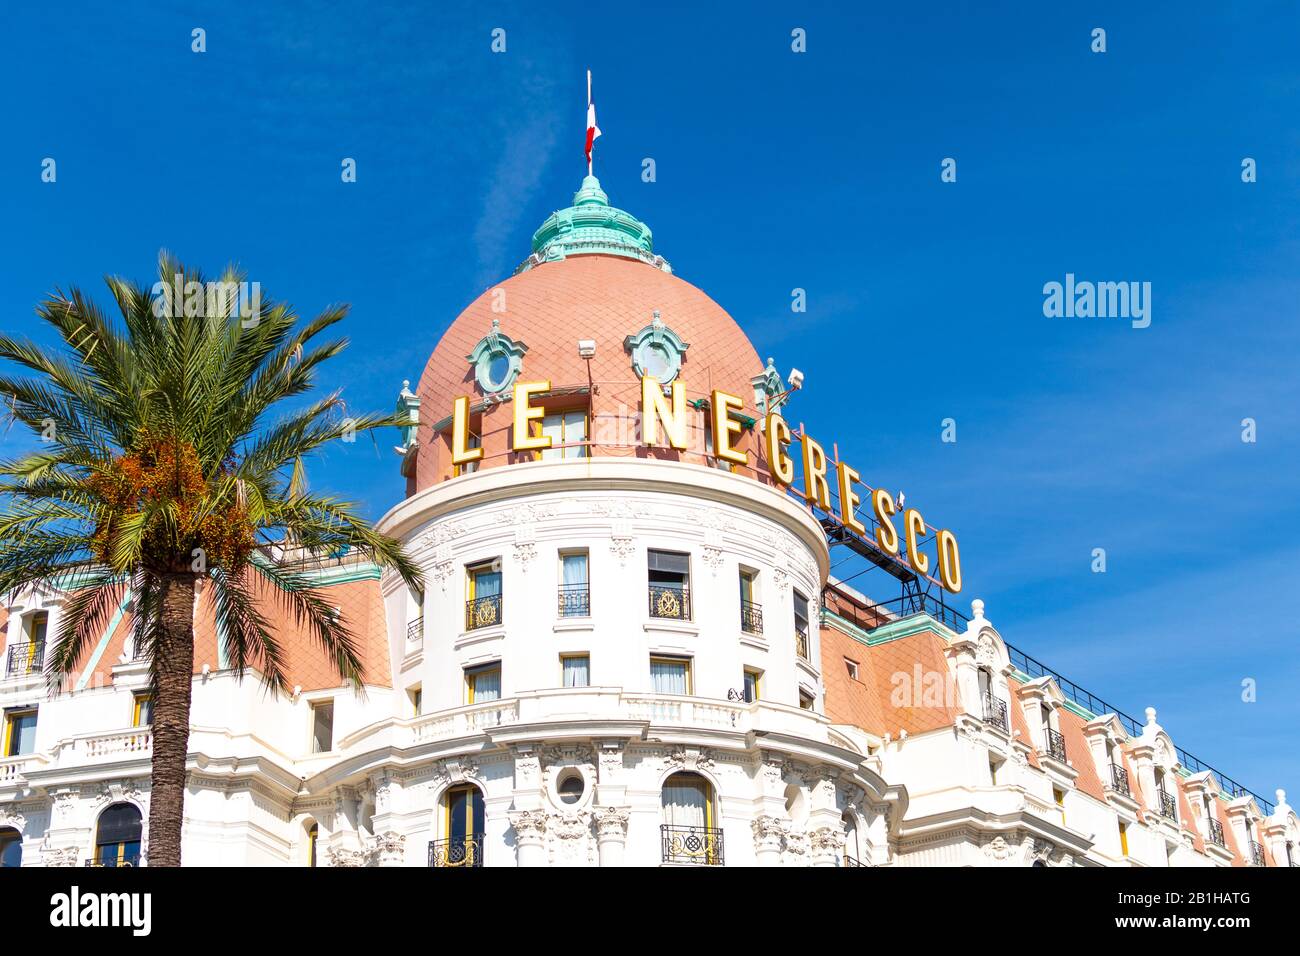 Palmenbaum und das luxuriöse Strandhotel Negresco an der Promenade des Anglais an der französischen Mittelmeerküste von Nizza. Stockfoto